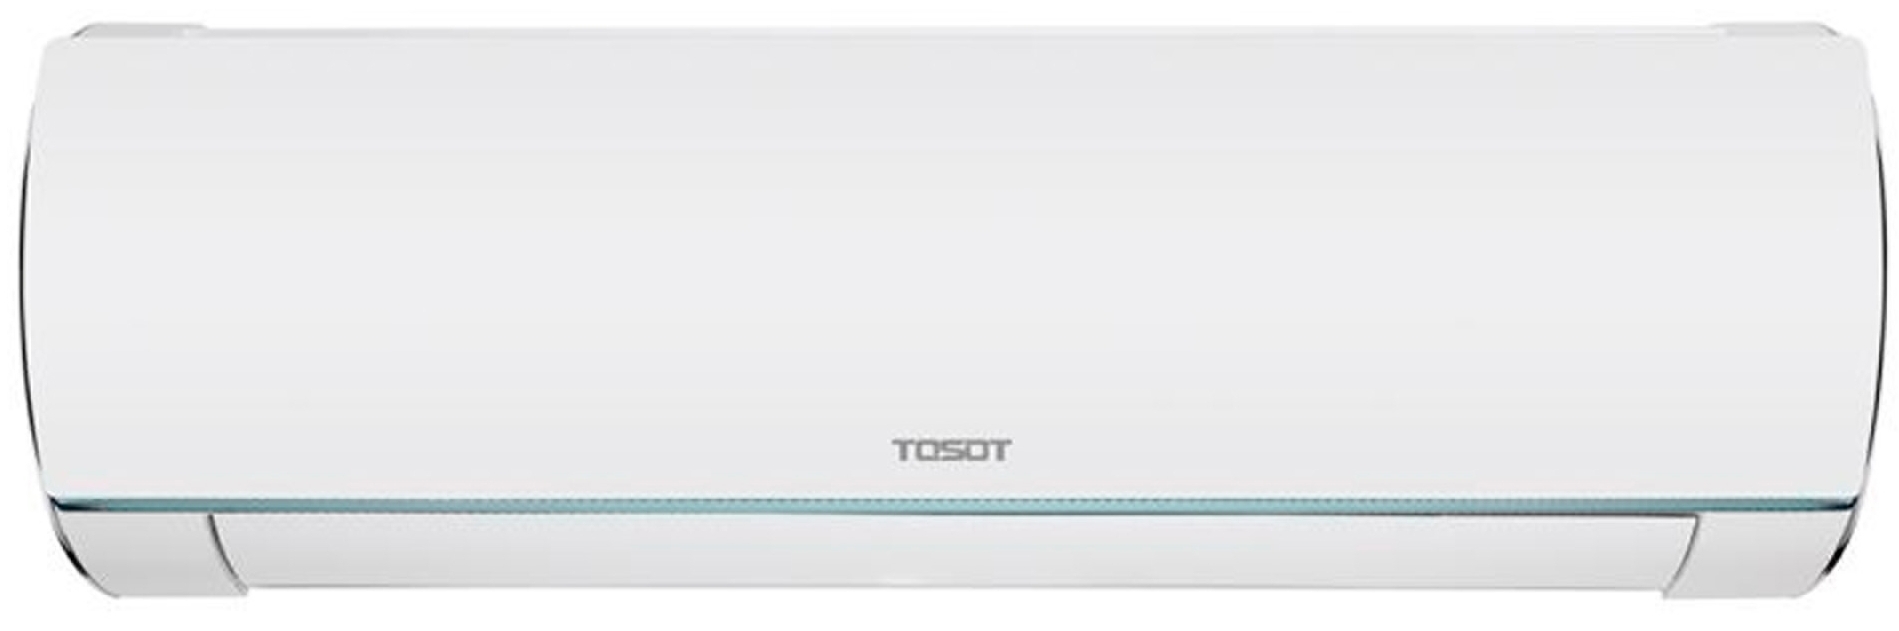 Кондиционер сплит-система Tosot Lyra Winter Inverter R32 GF-18W2 цена 42310.80 грн - фотография 2